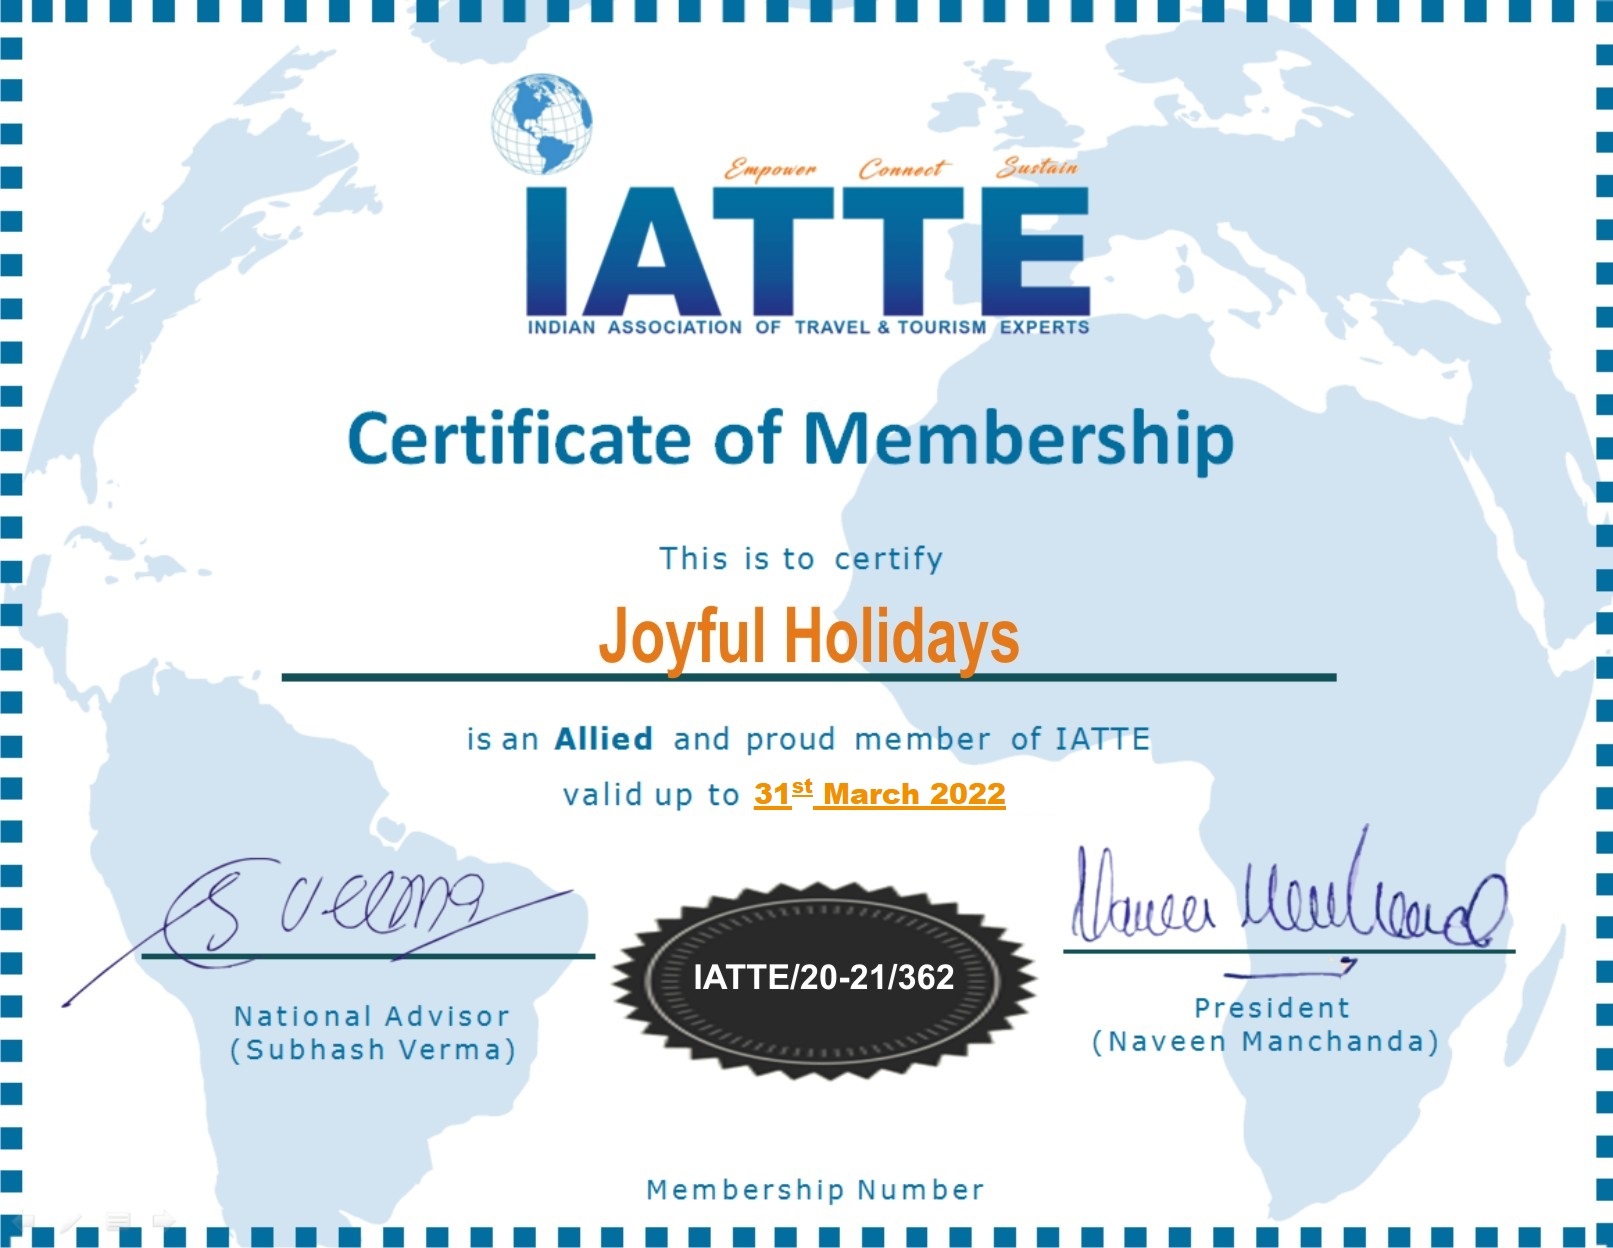 IATTE Certificate of Membership